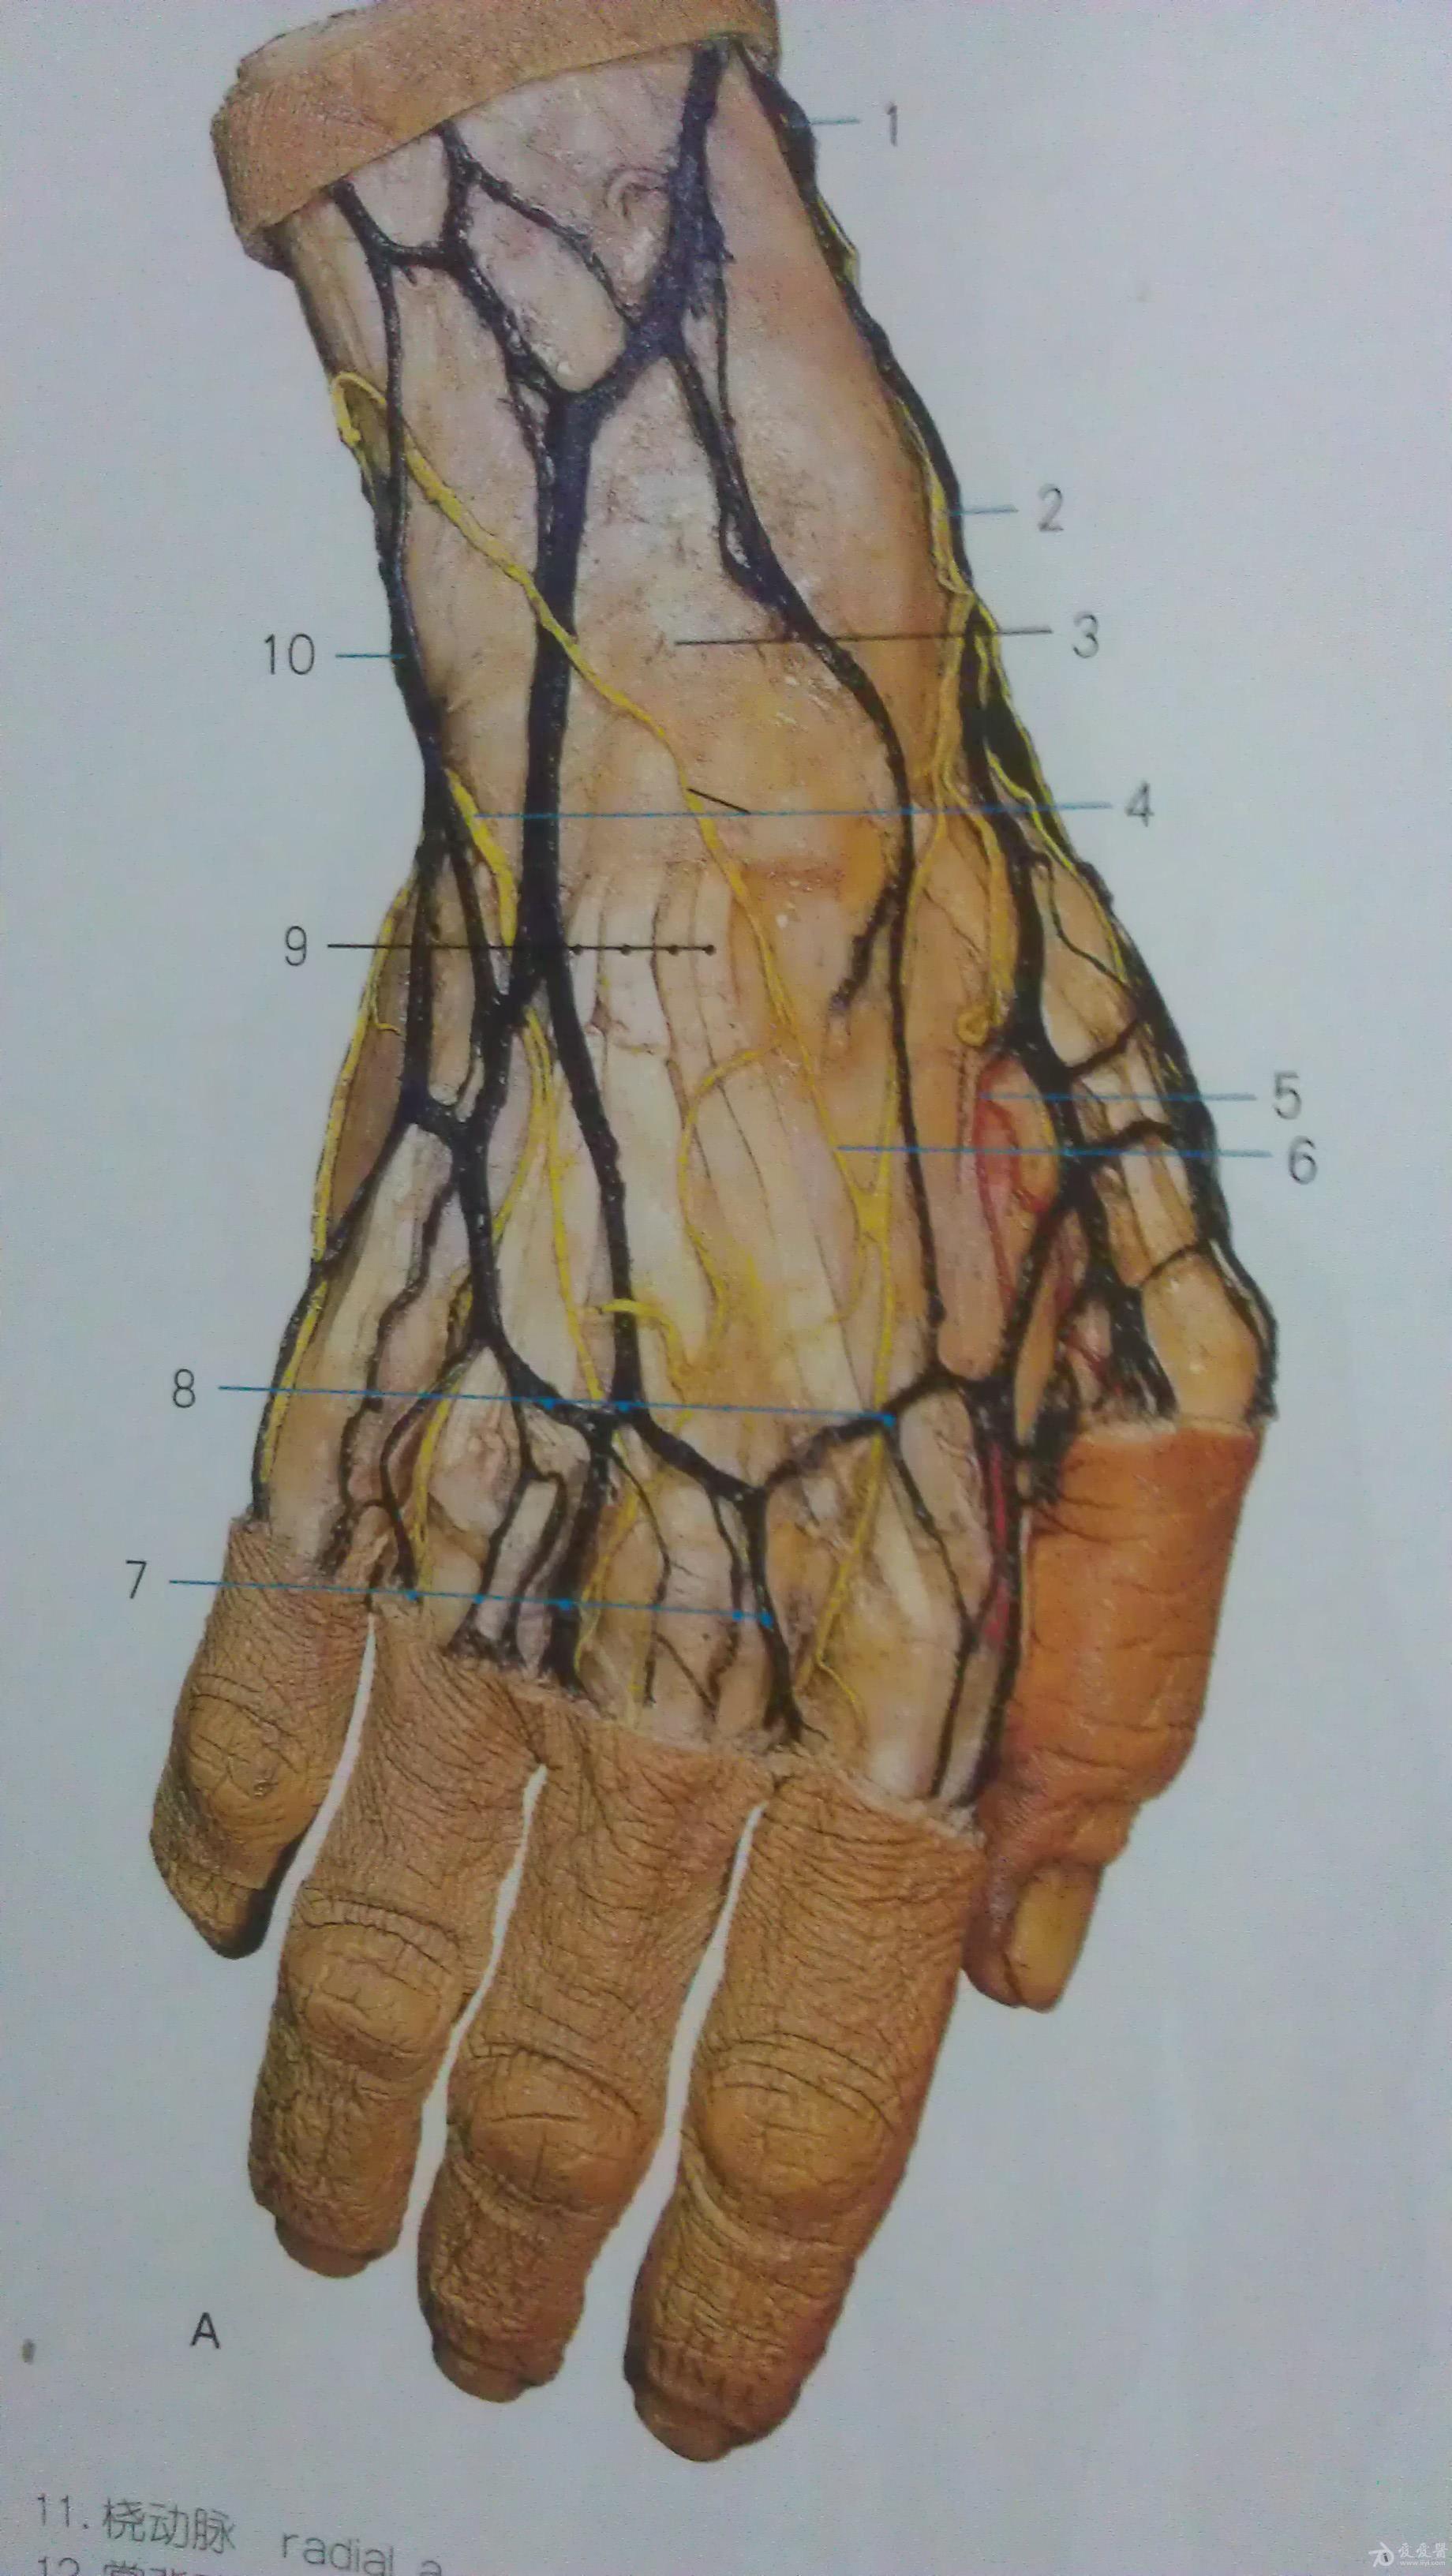 手背静脉血管分布图图片